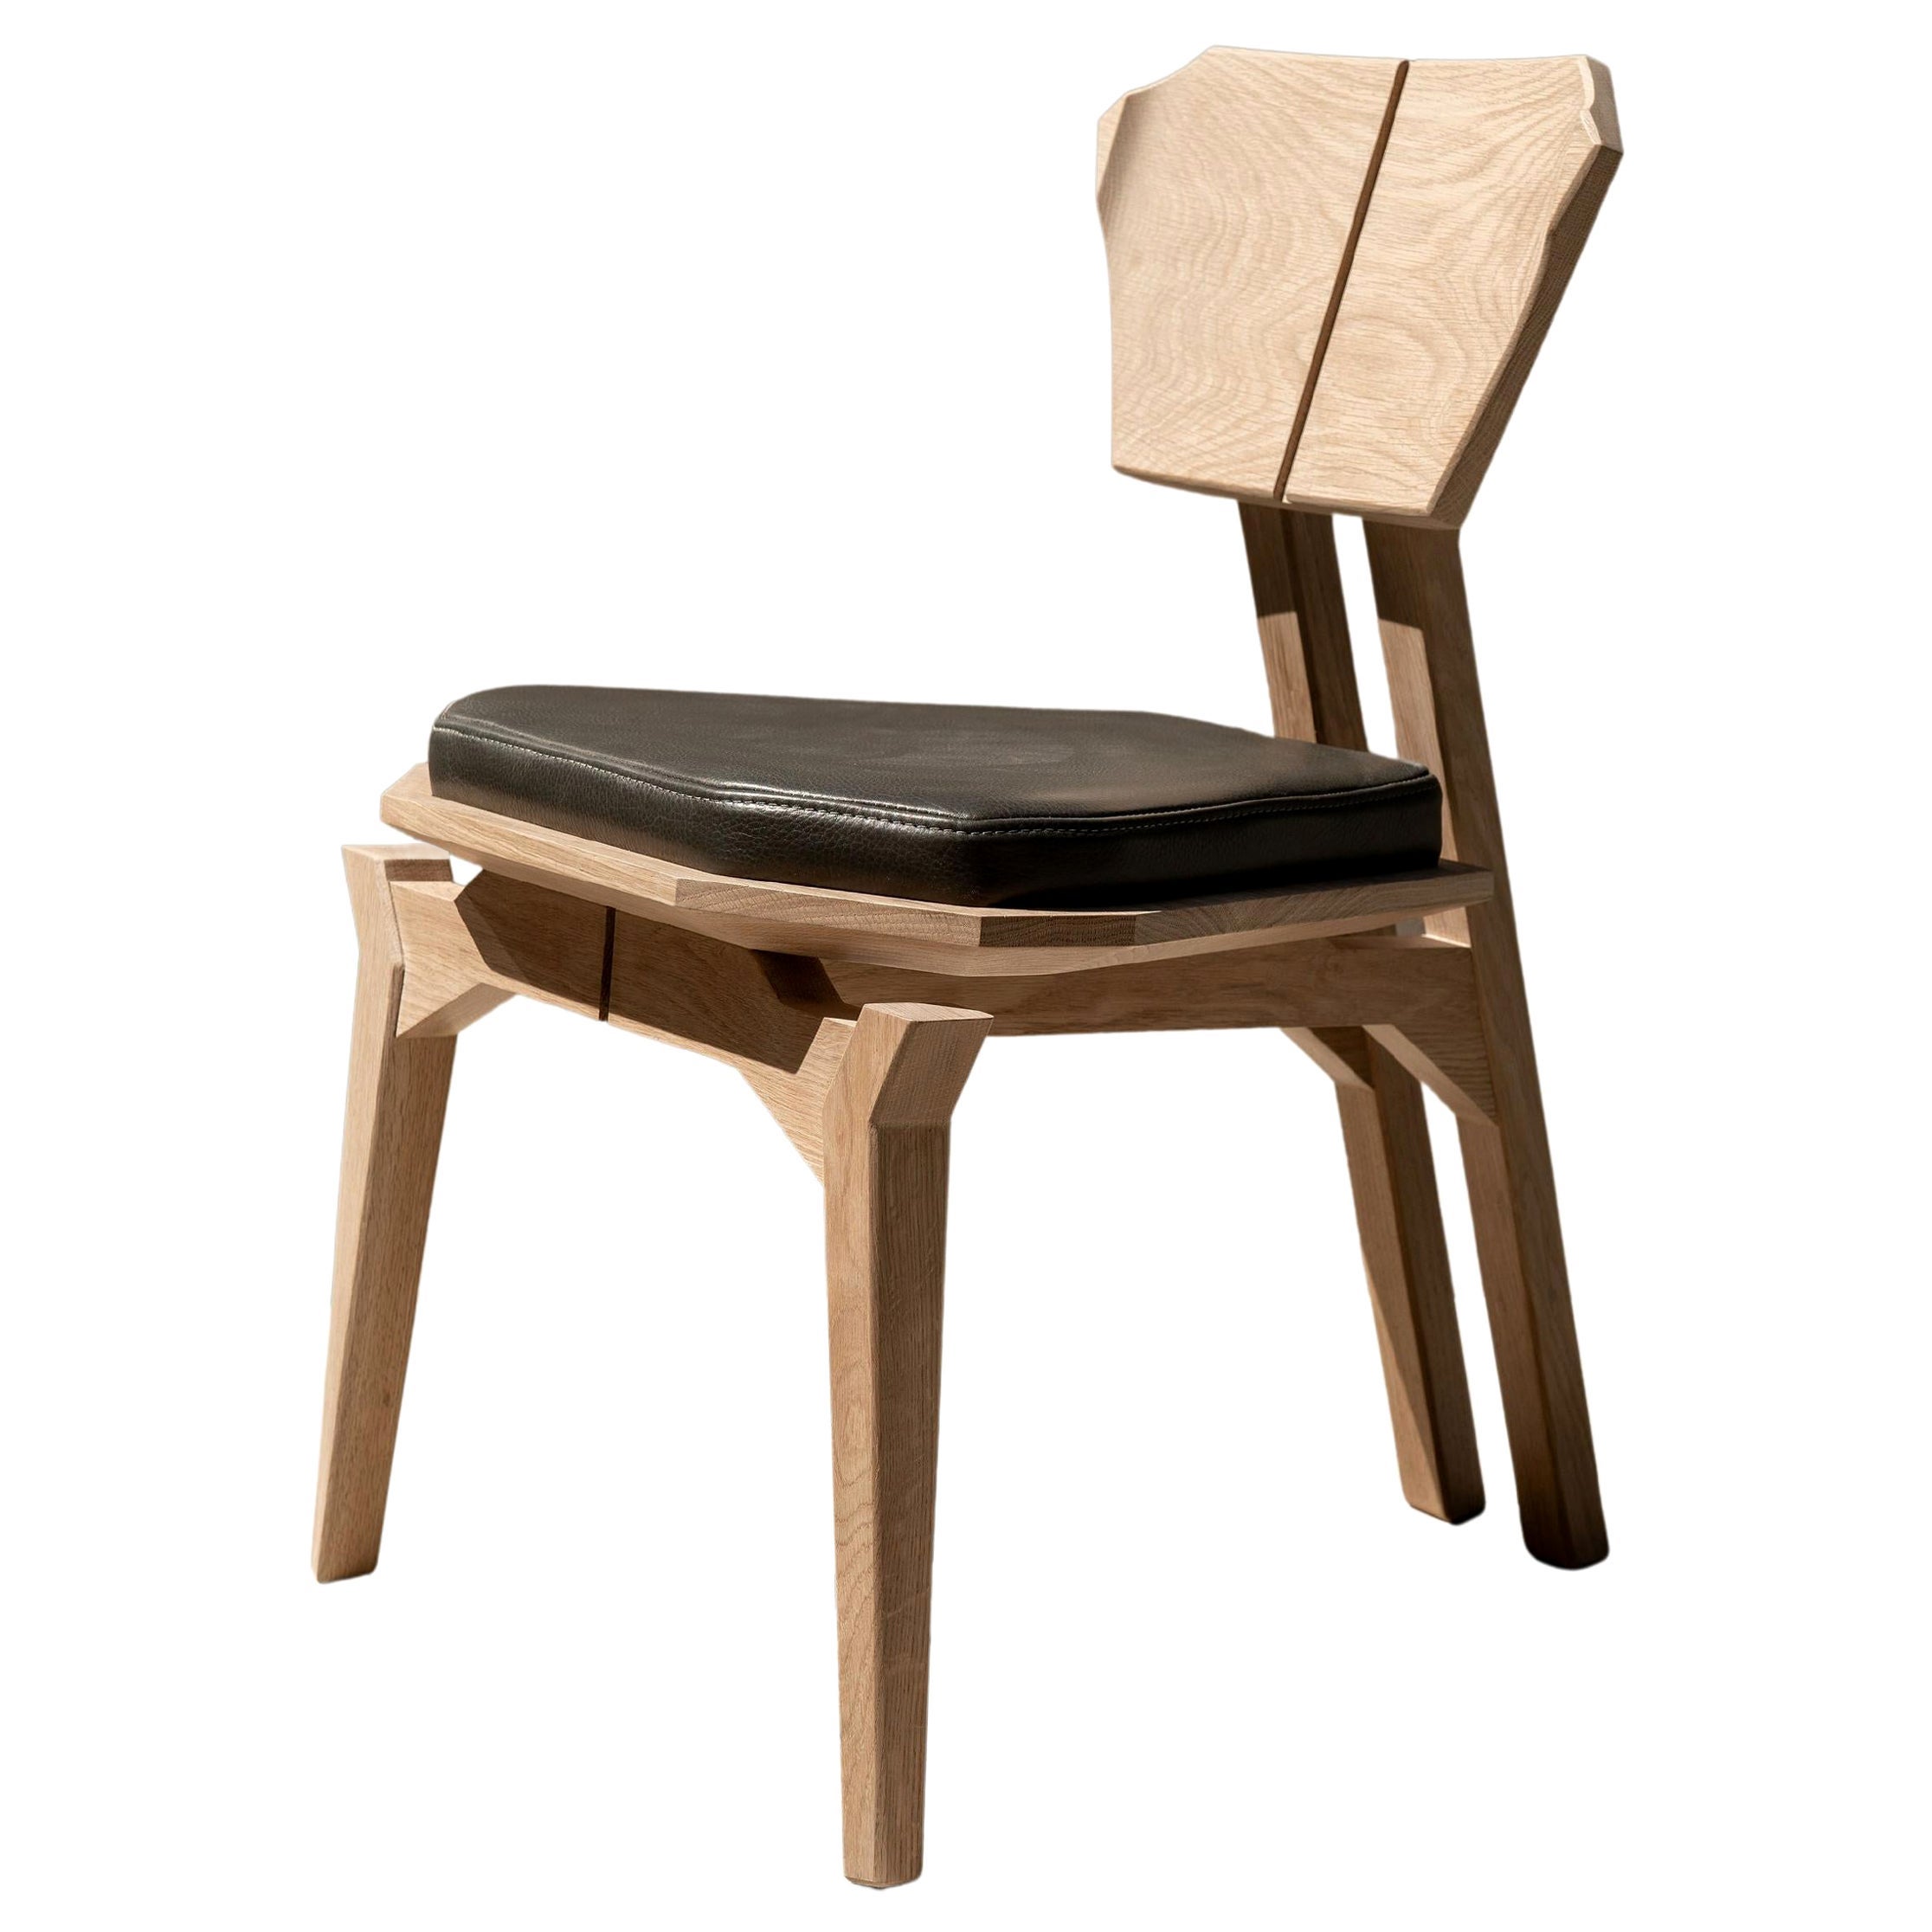 Ángulo Chair by Arturo Verástegui